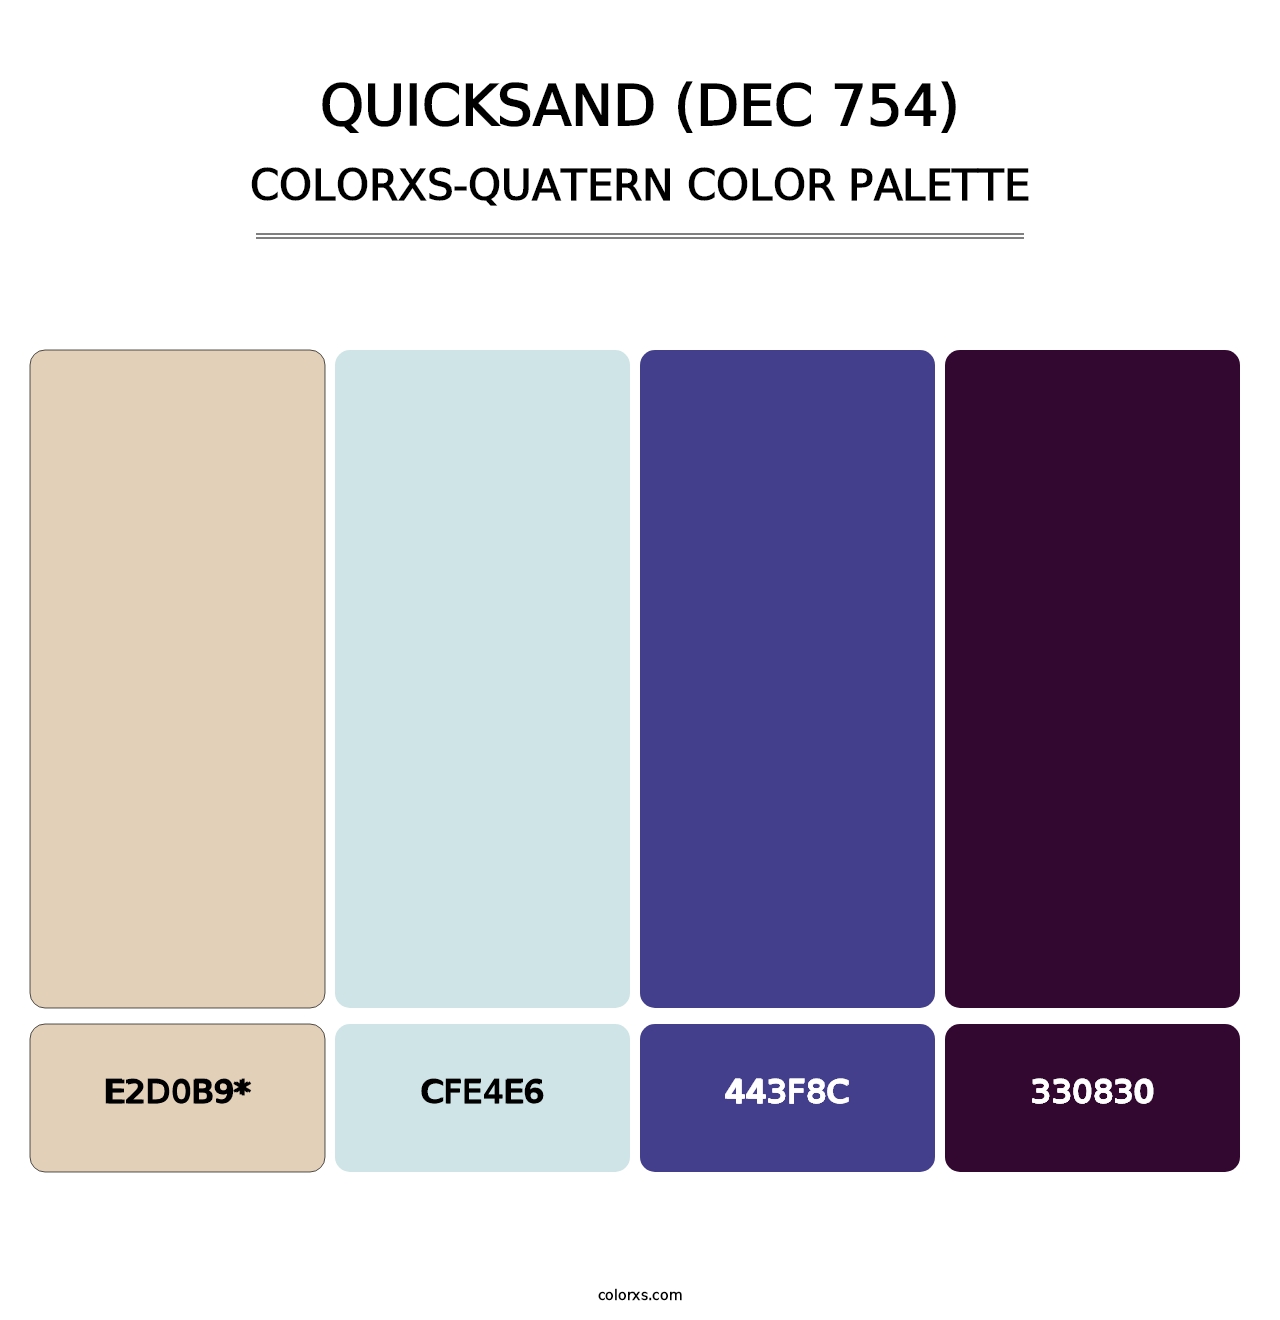 Quicksand (DEC 754) - Colorxs Quatern Palette